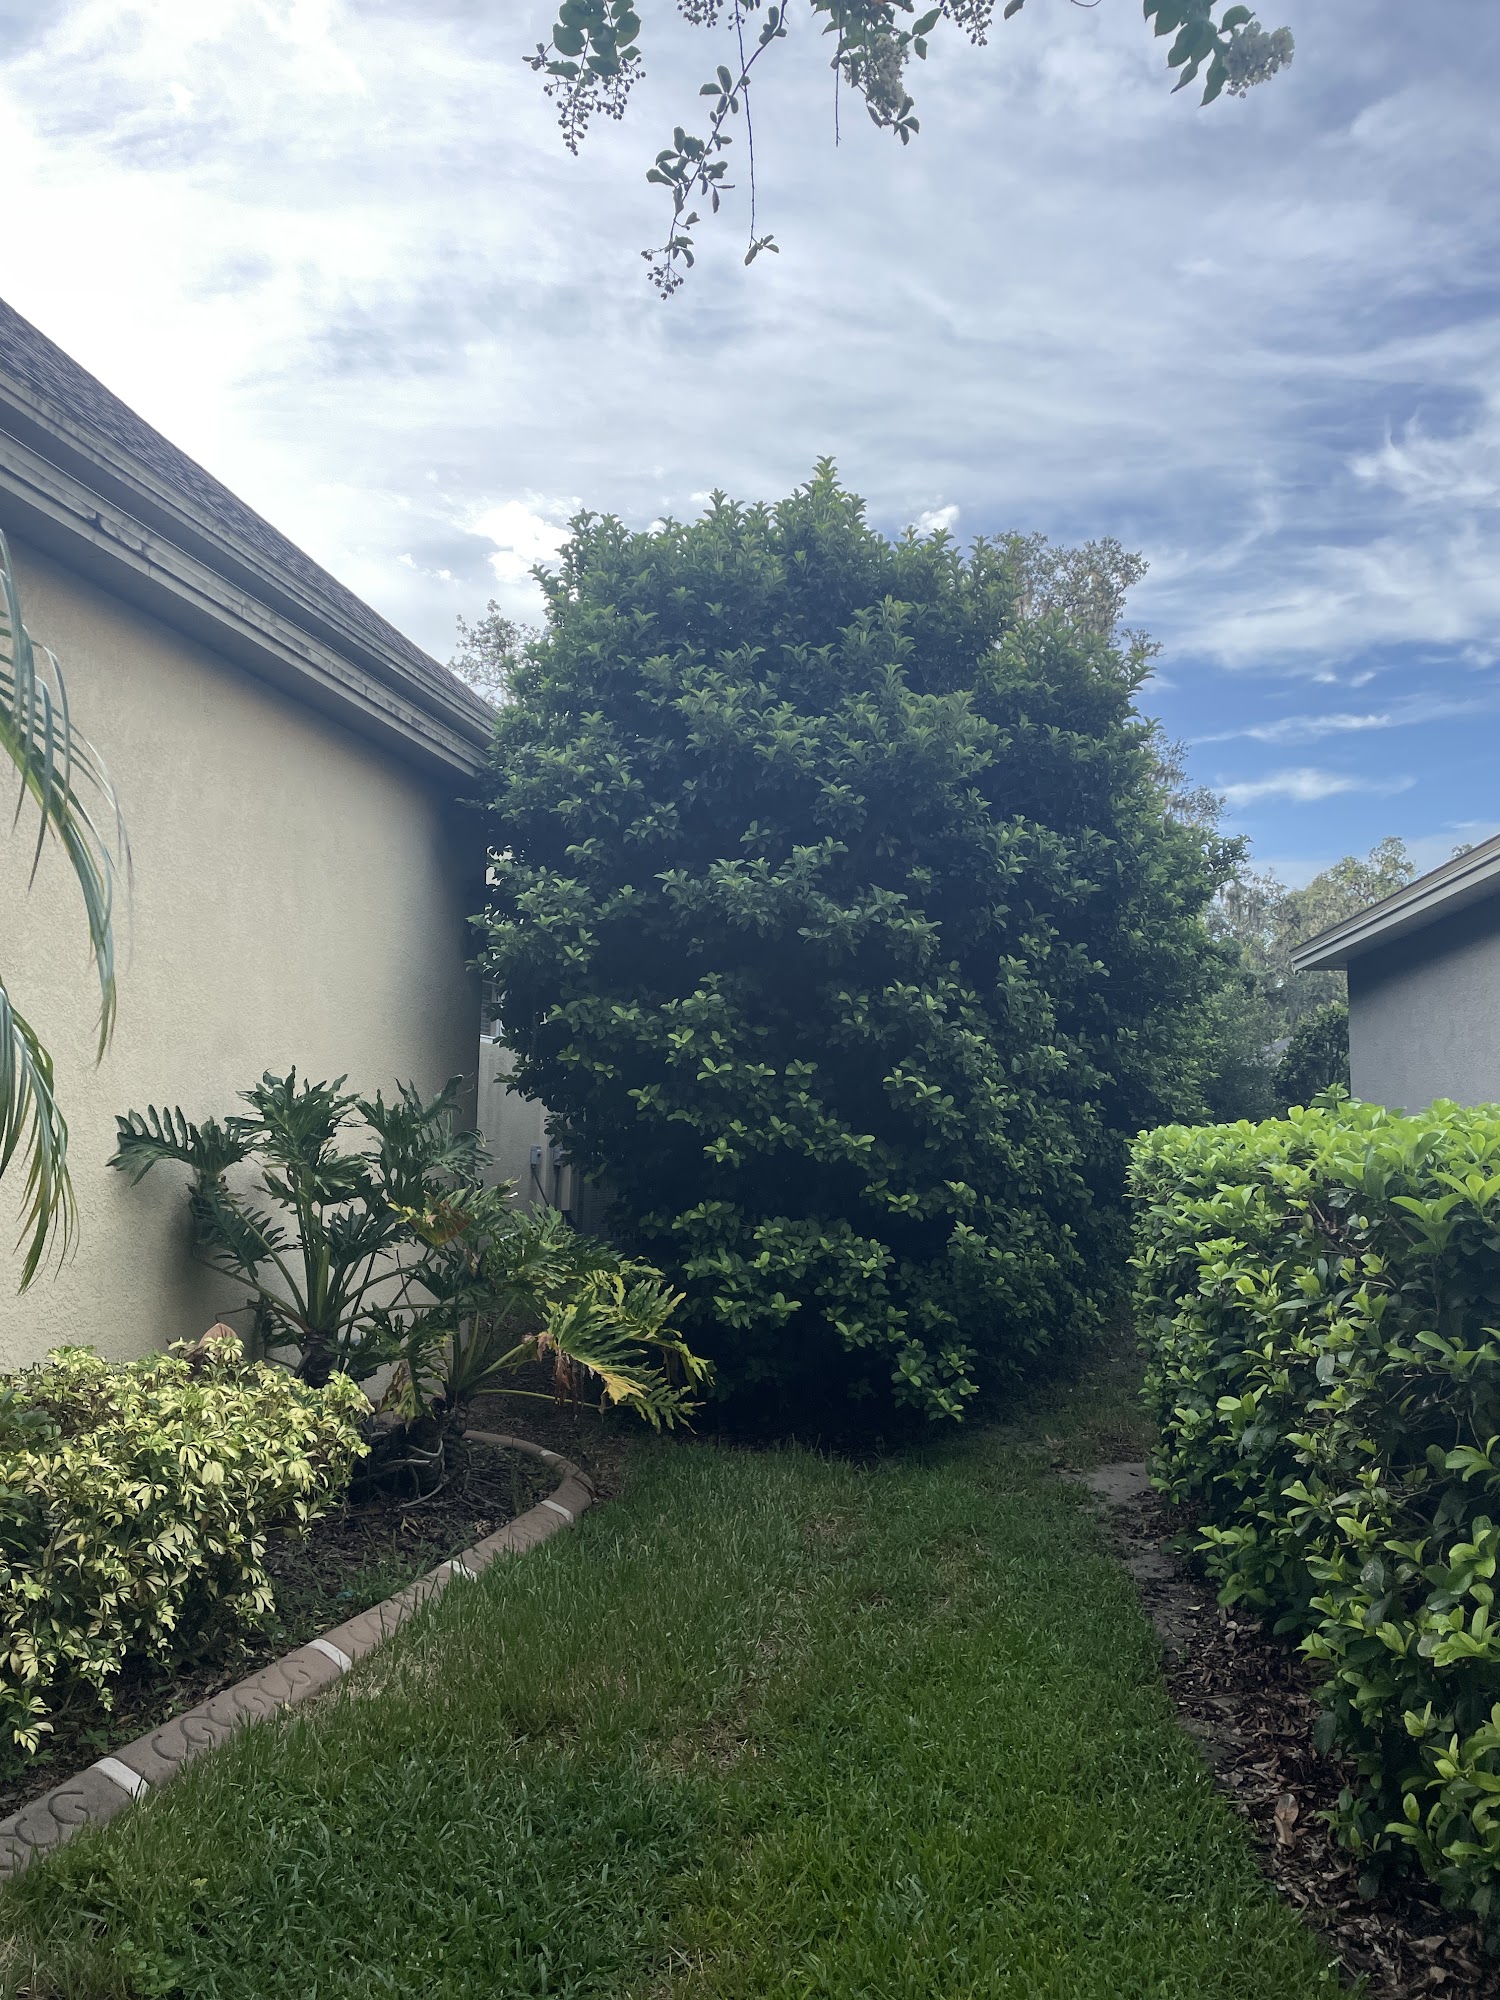 Tealz Trees 815 N Kingsway Rd, Seffner Florida 33584